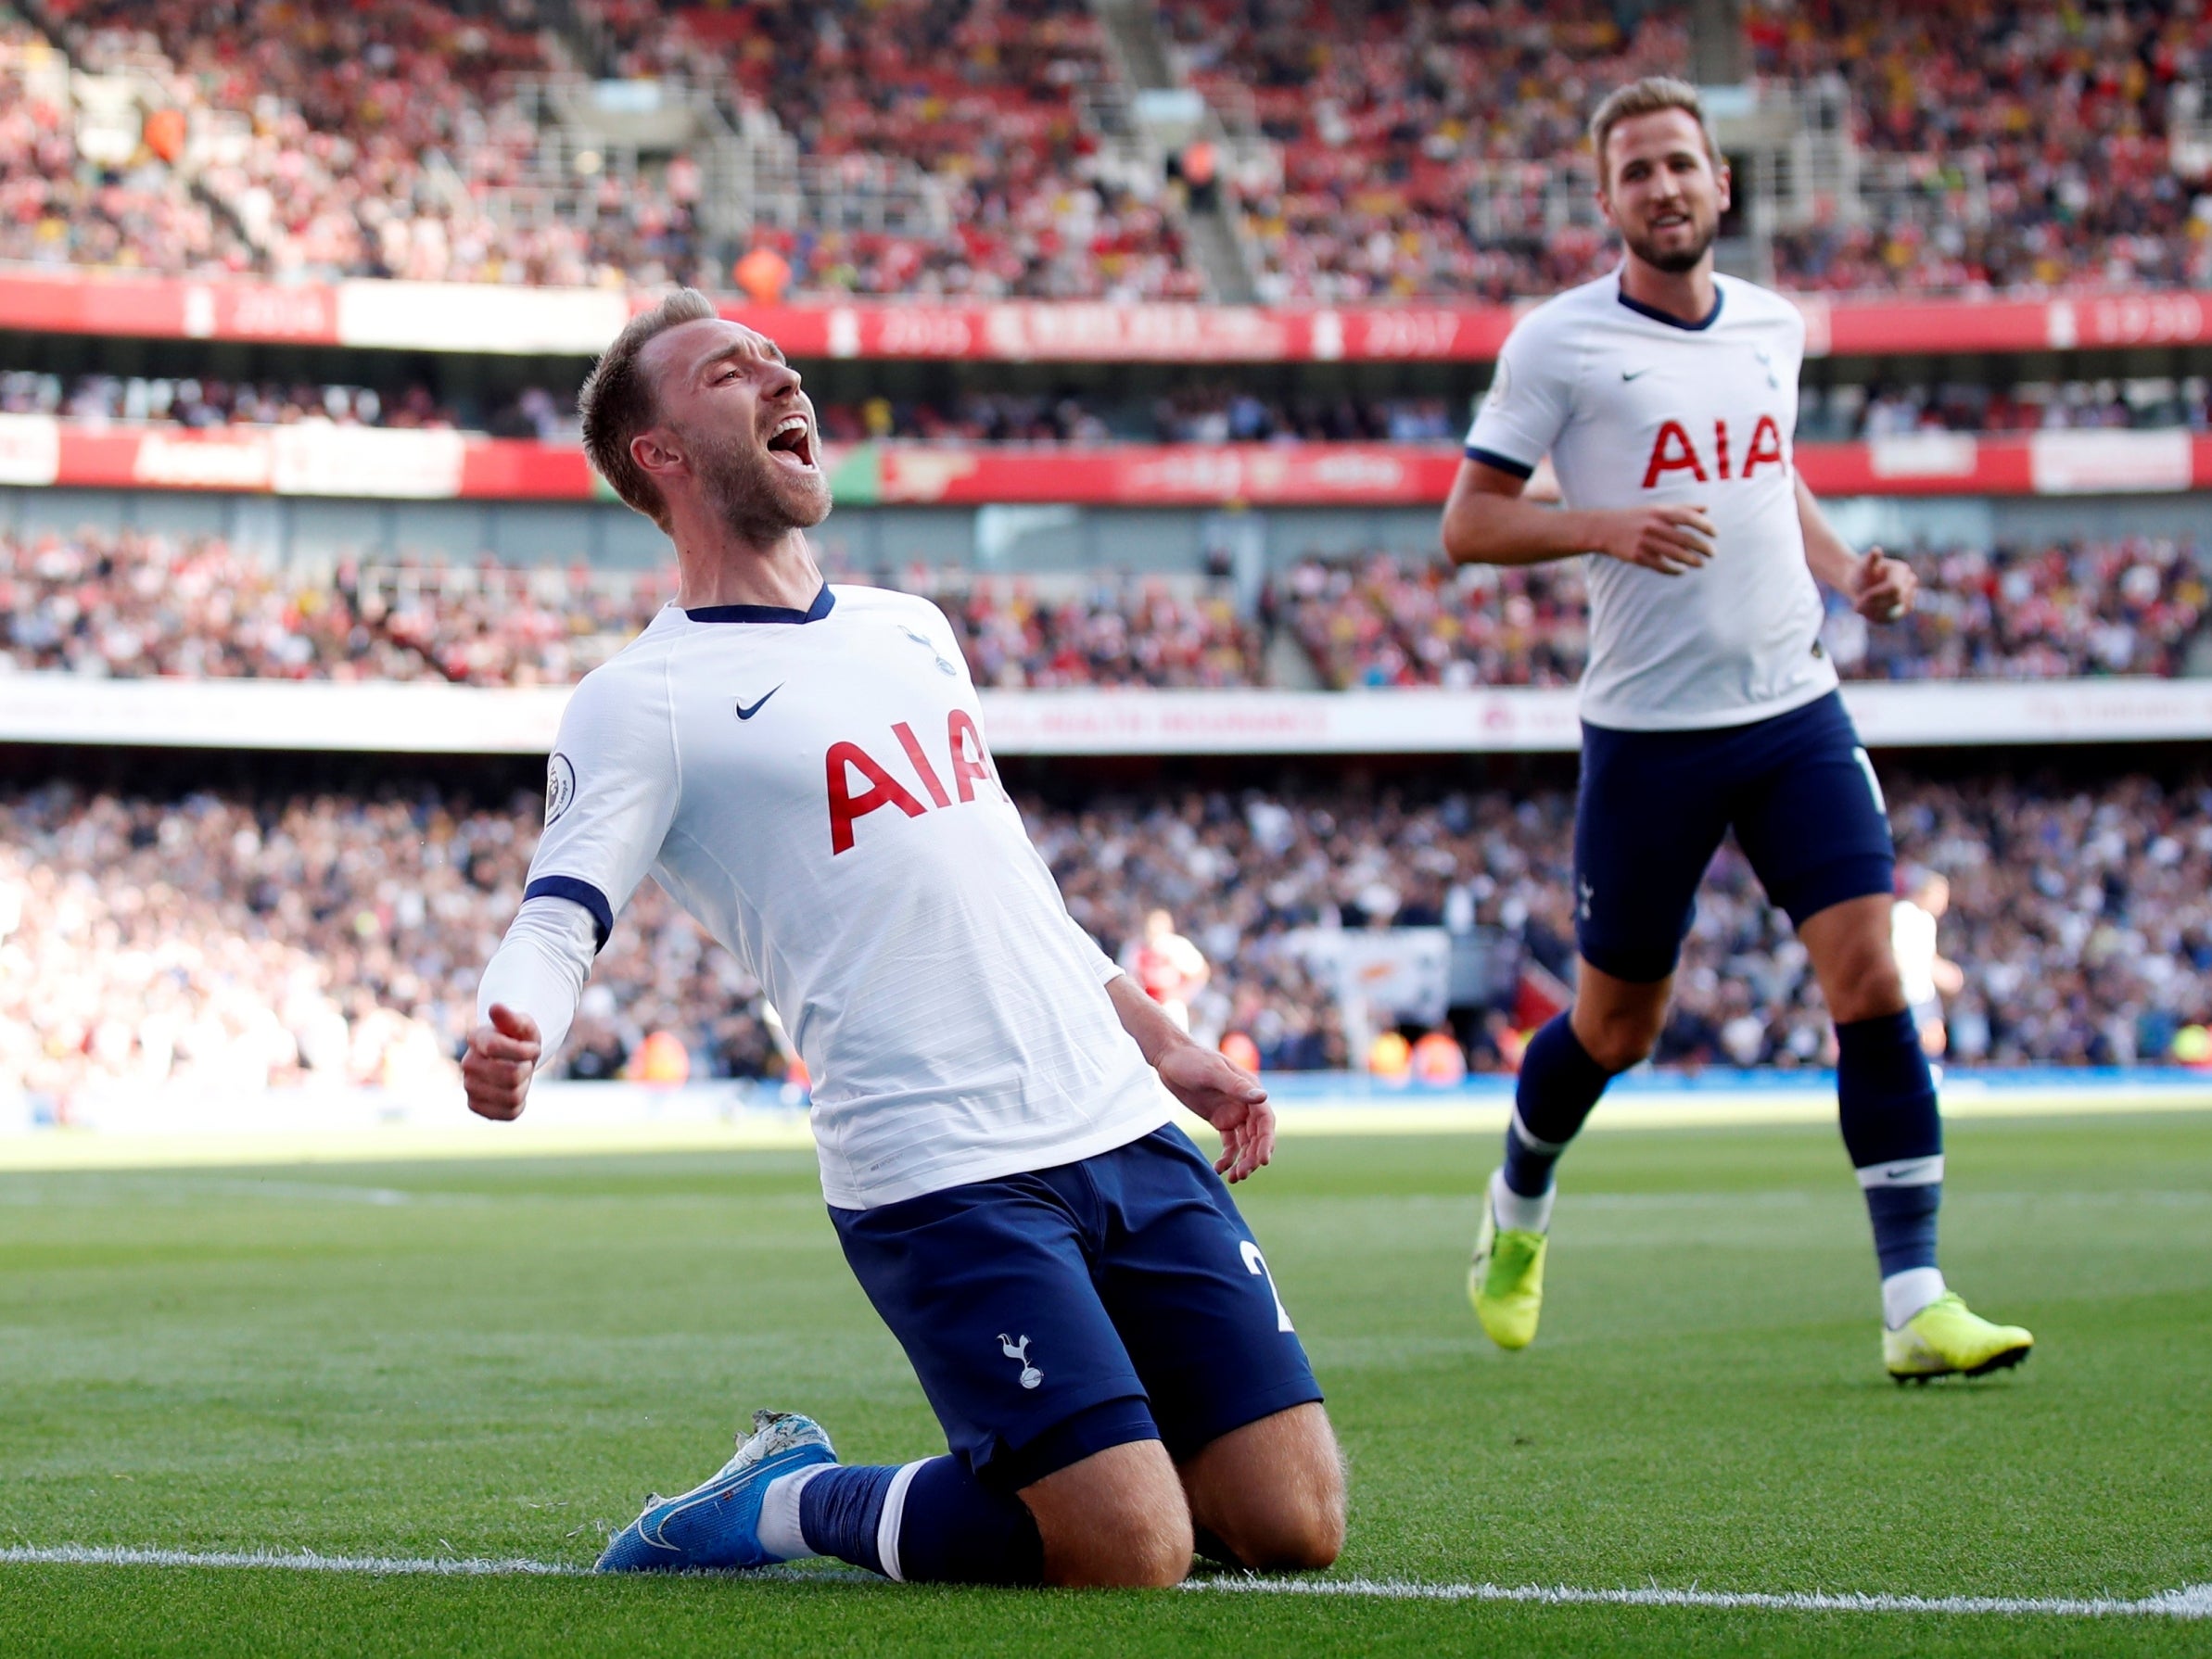 Christian Eriksen scores Tottenham’s first goal against Arsenal